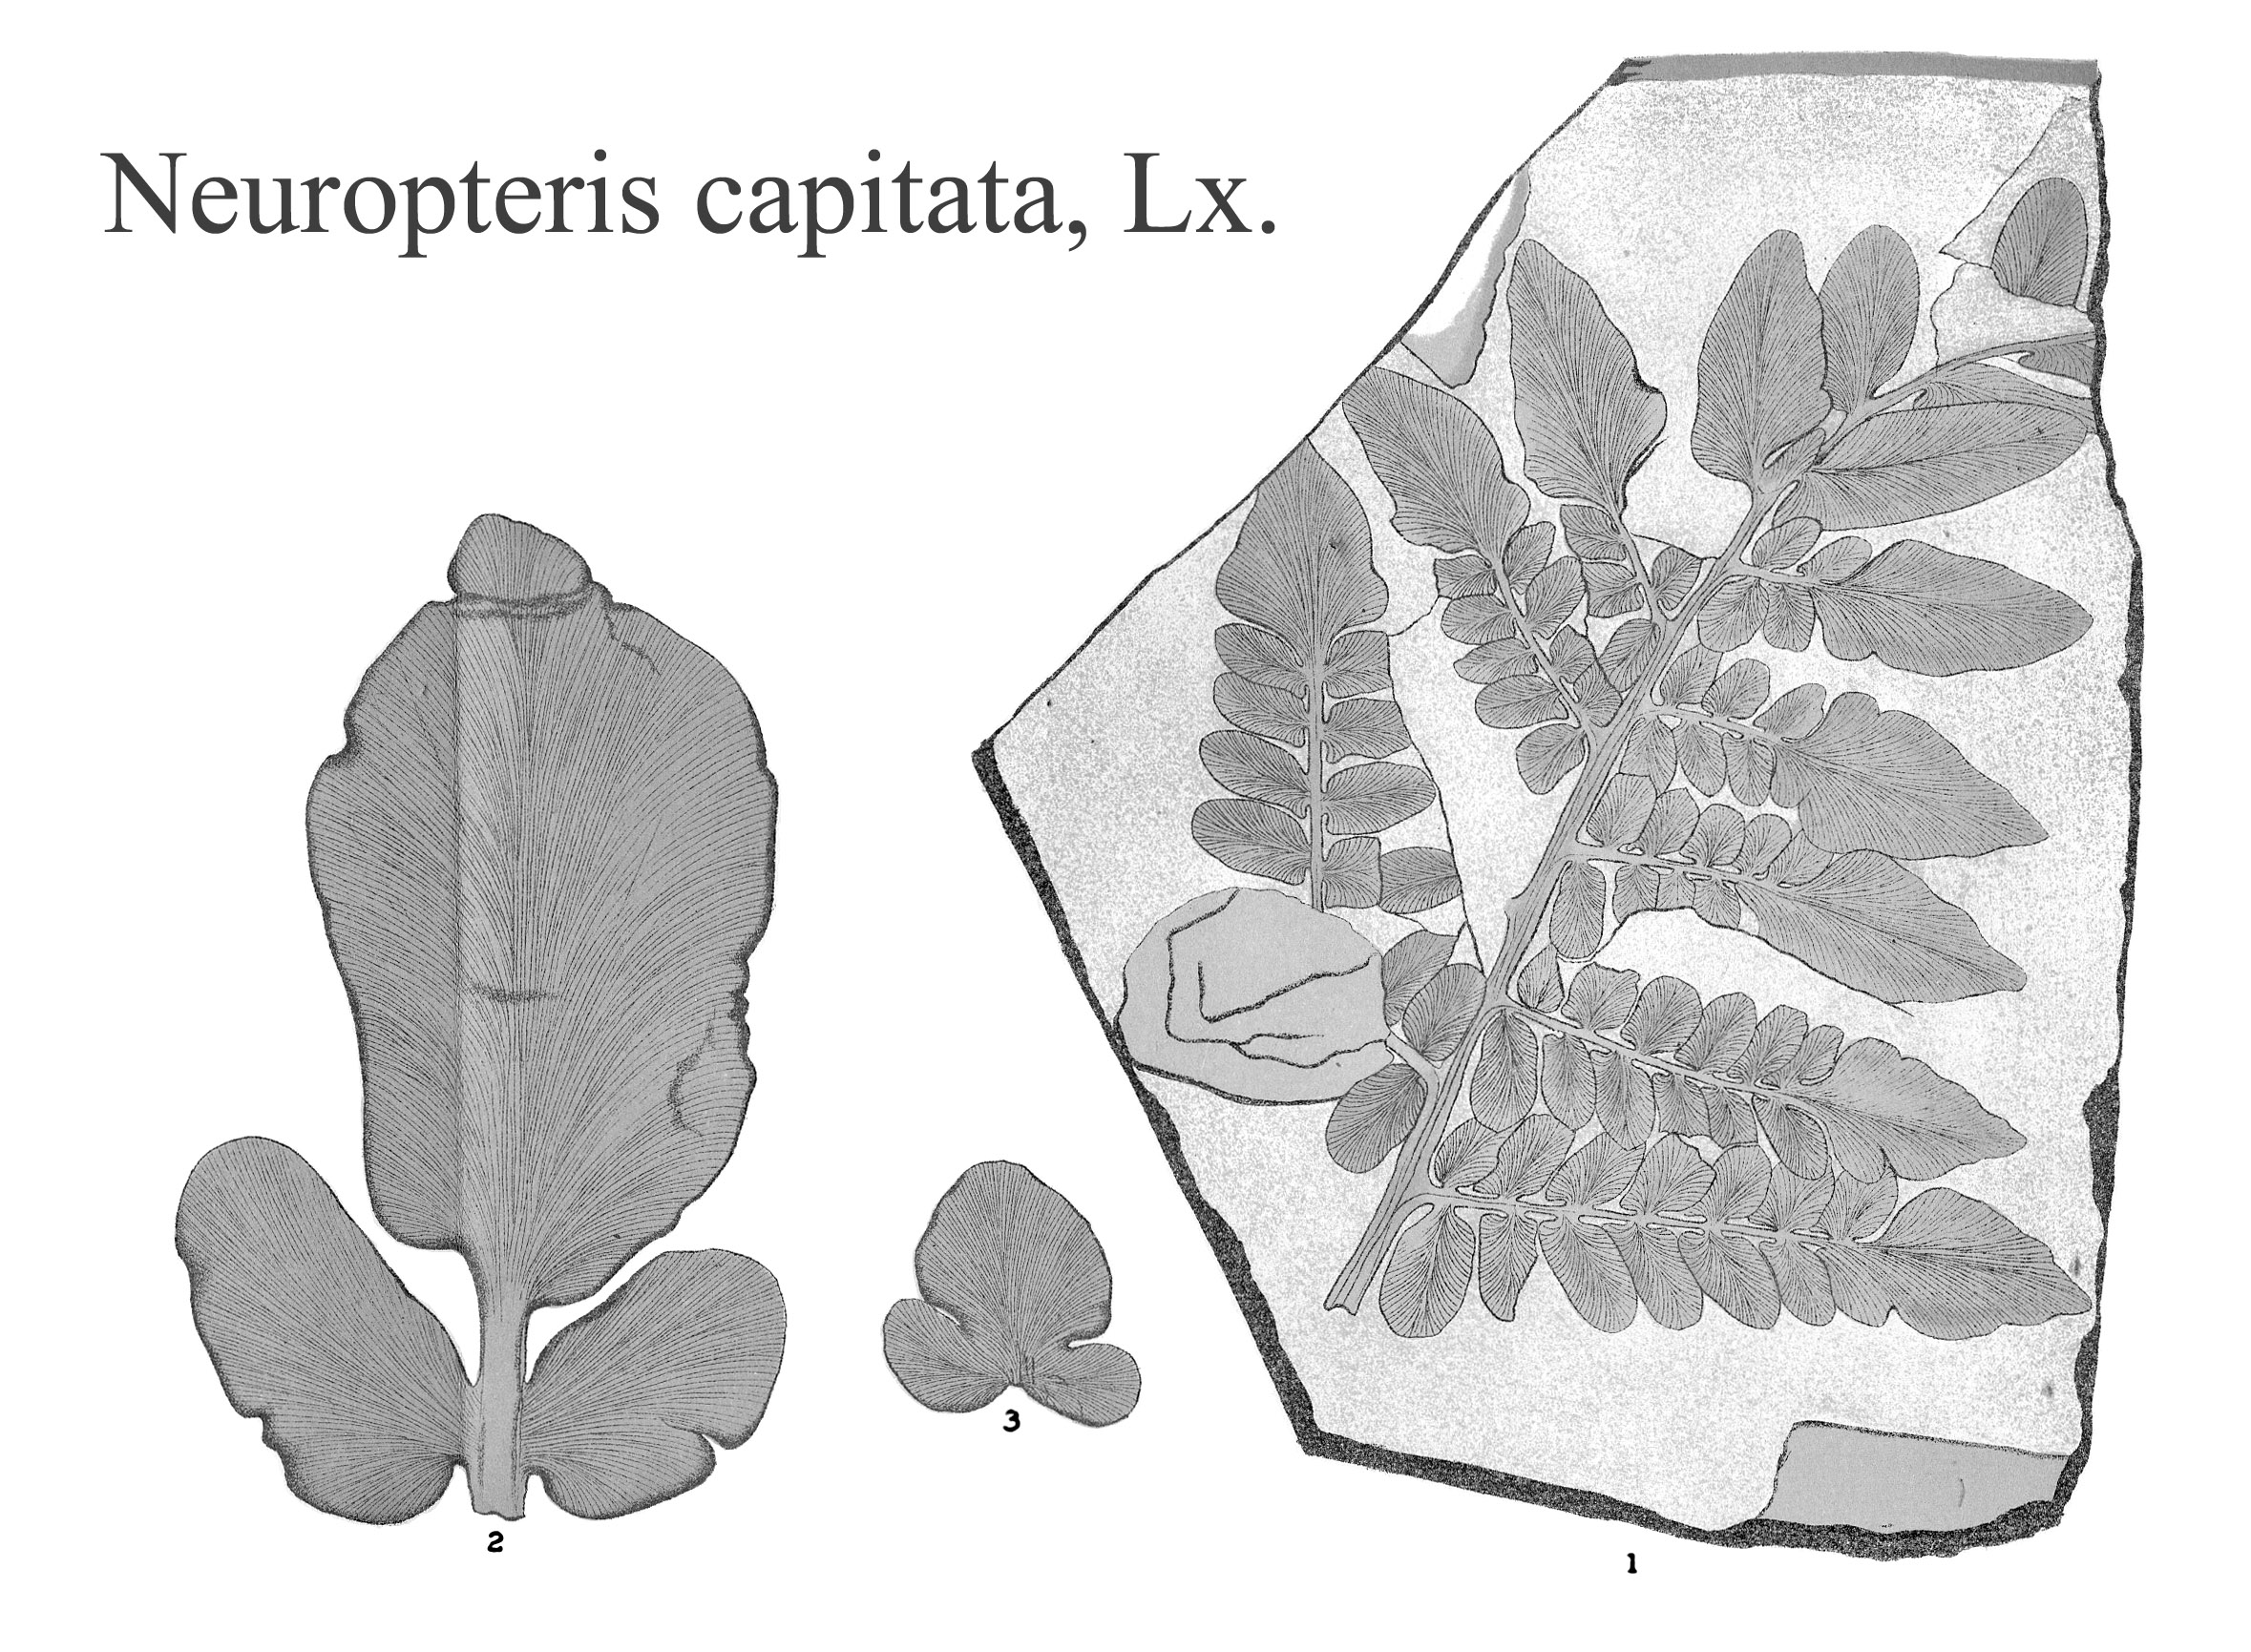 Neuropteris capitata, Plate XXIII